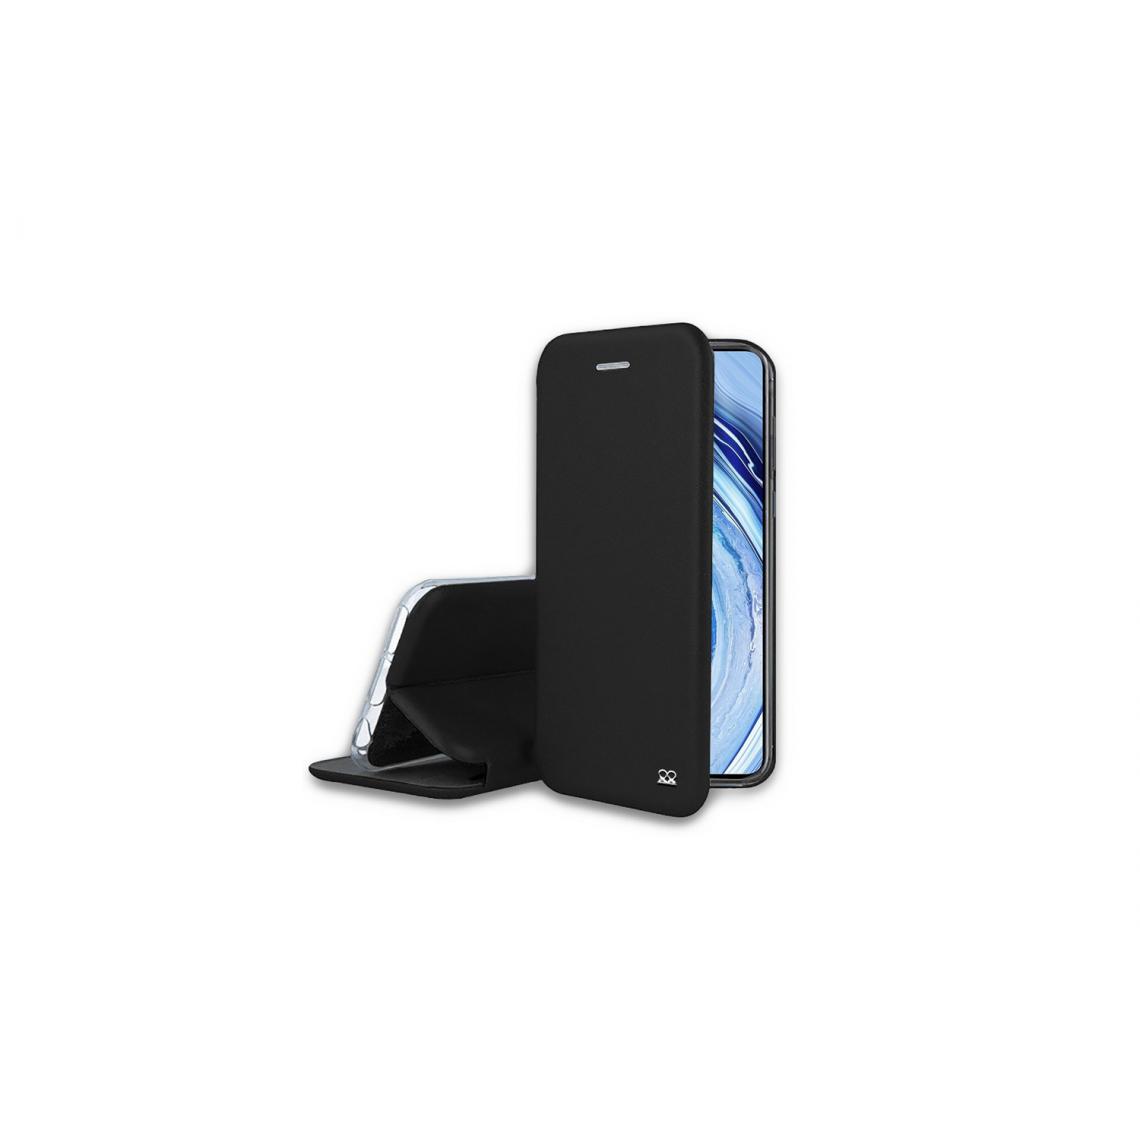 Ibroz - Ibroz Etui en cuir noir pour Xiaomi - Coque, étui smartphone